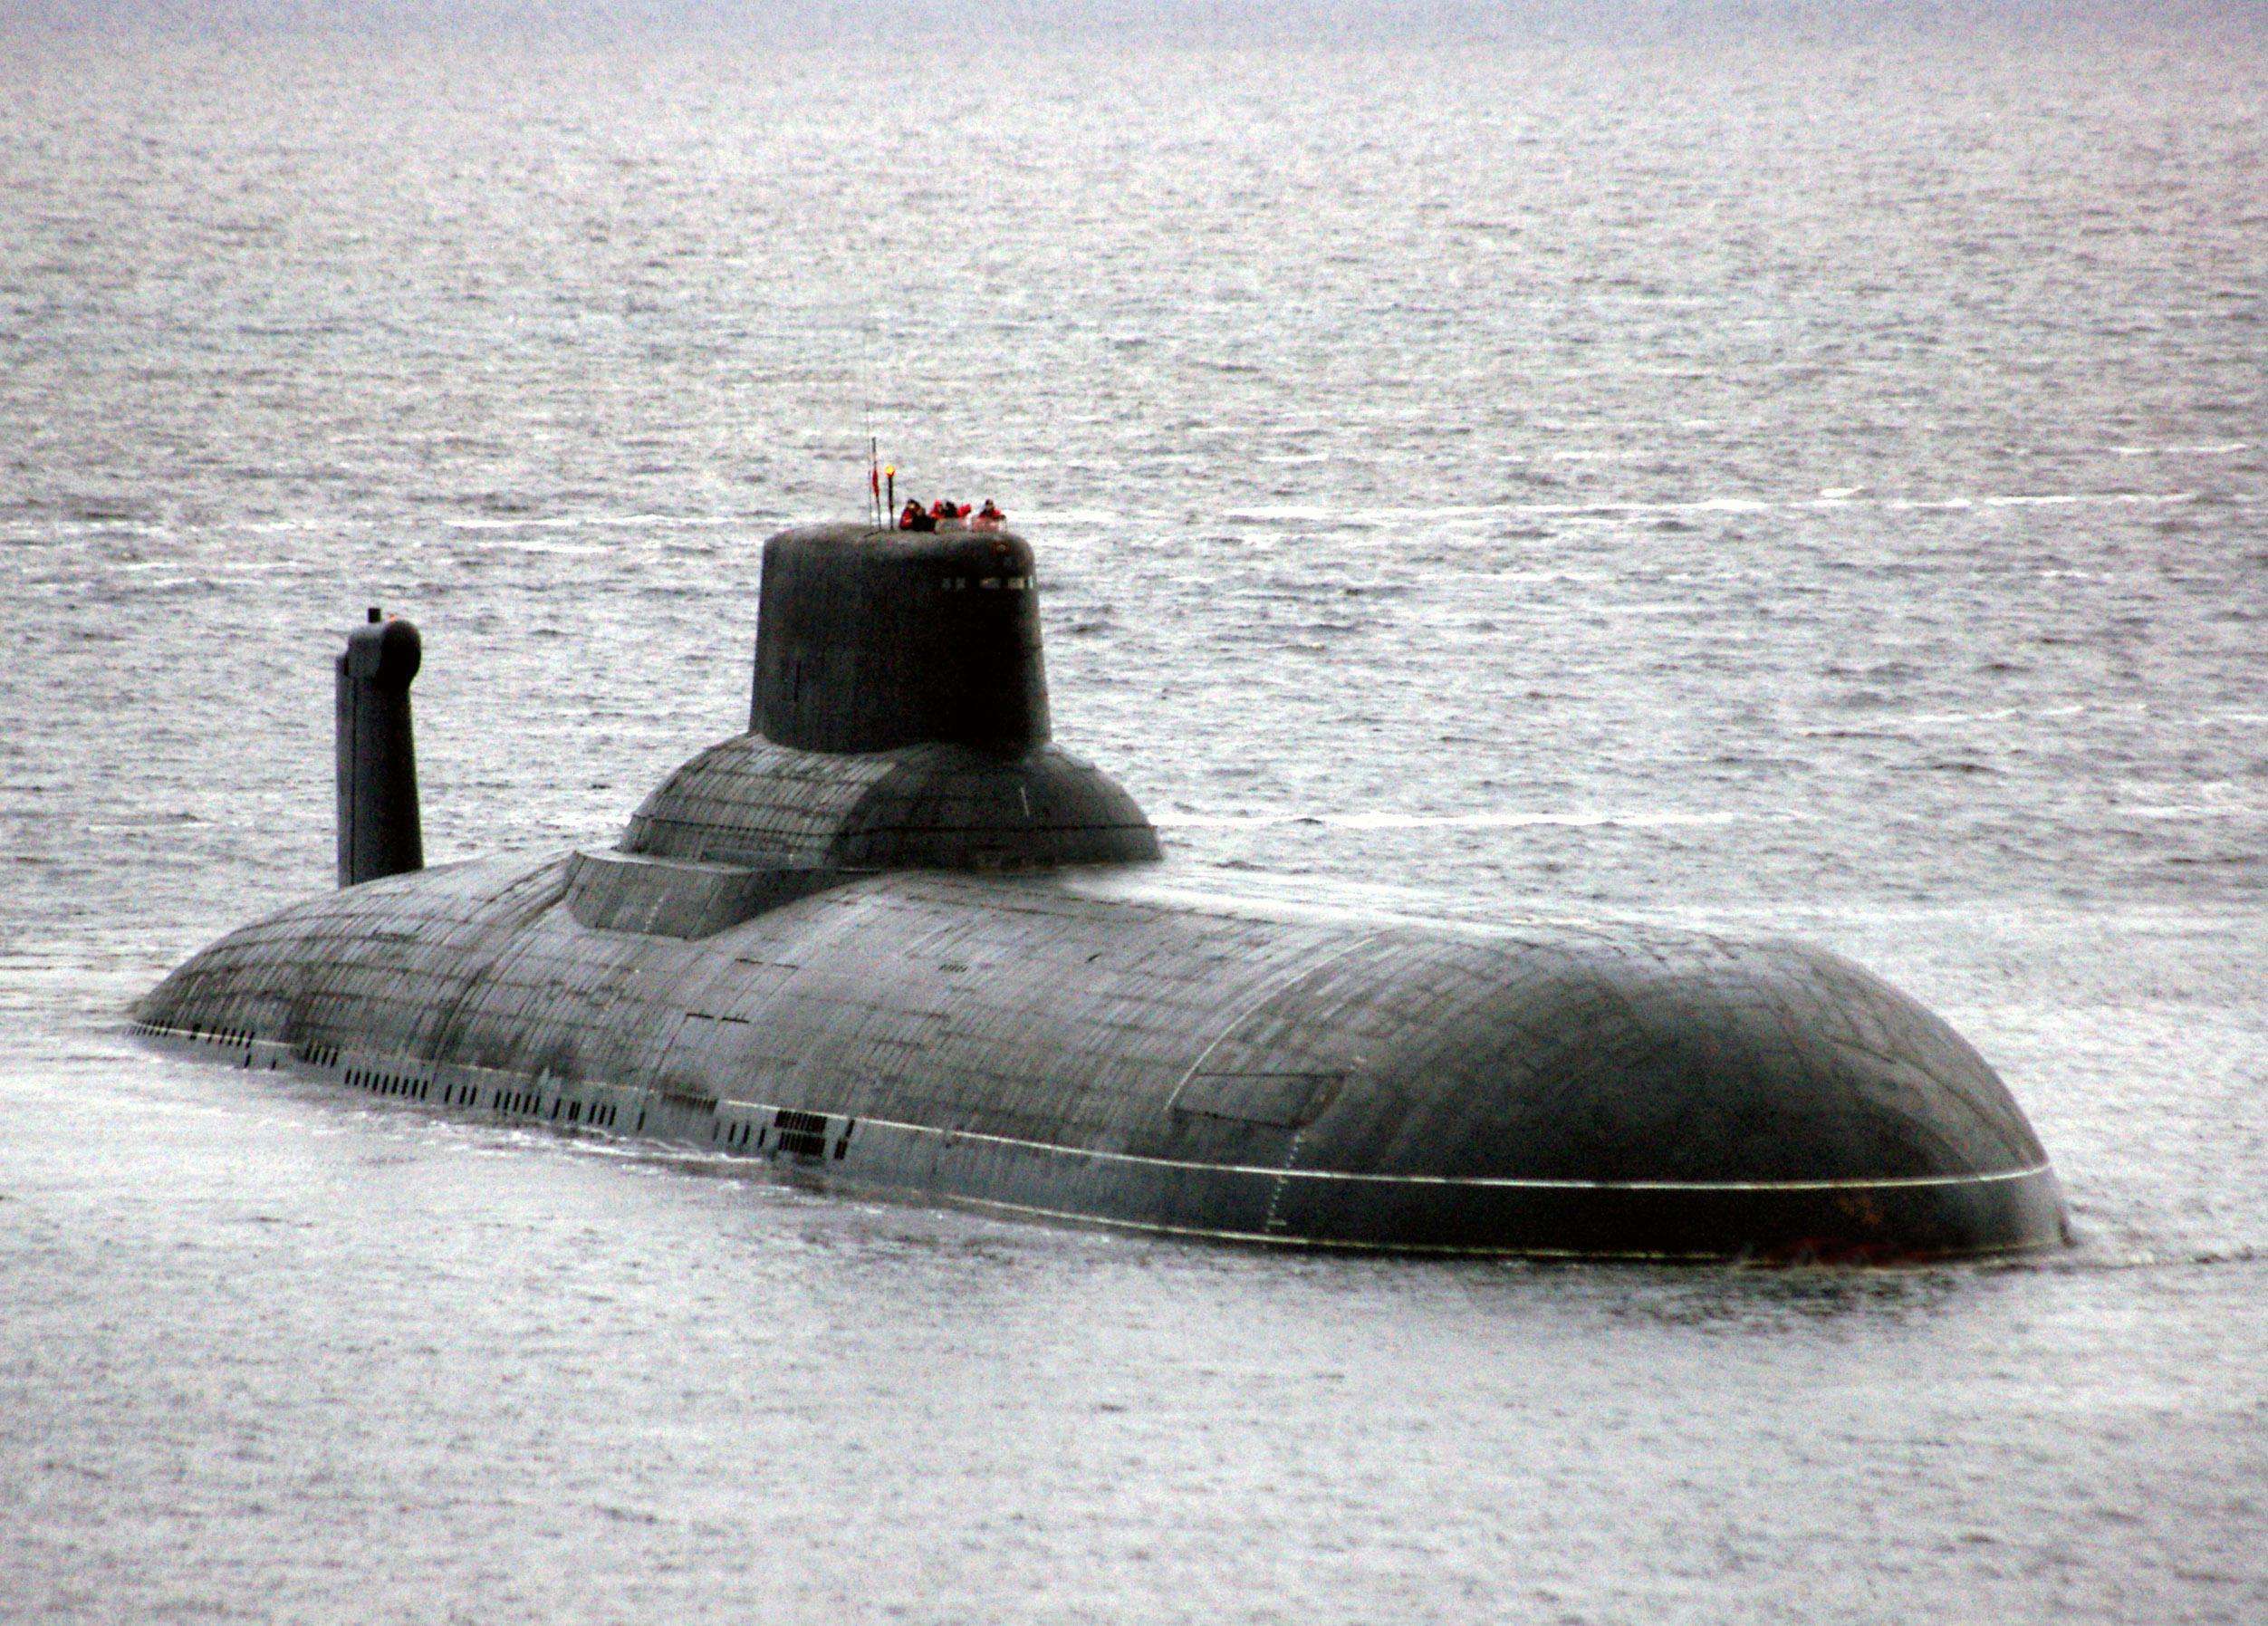 原创俄罗斯潜艇鲨鱼级攻击核潜艇